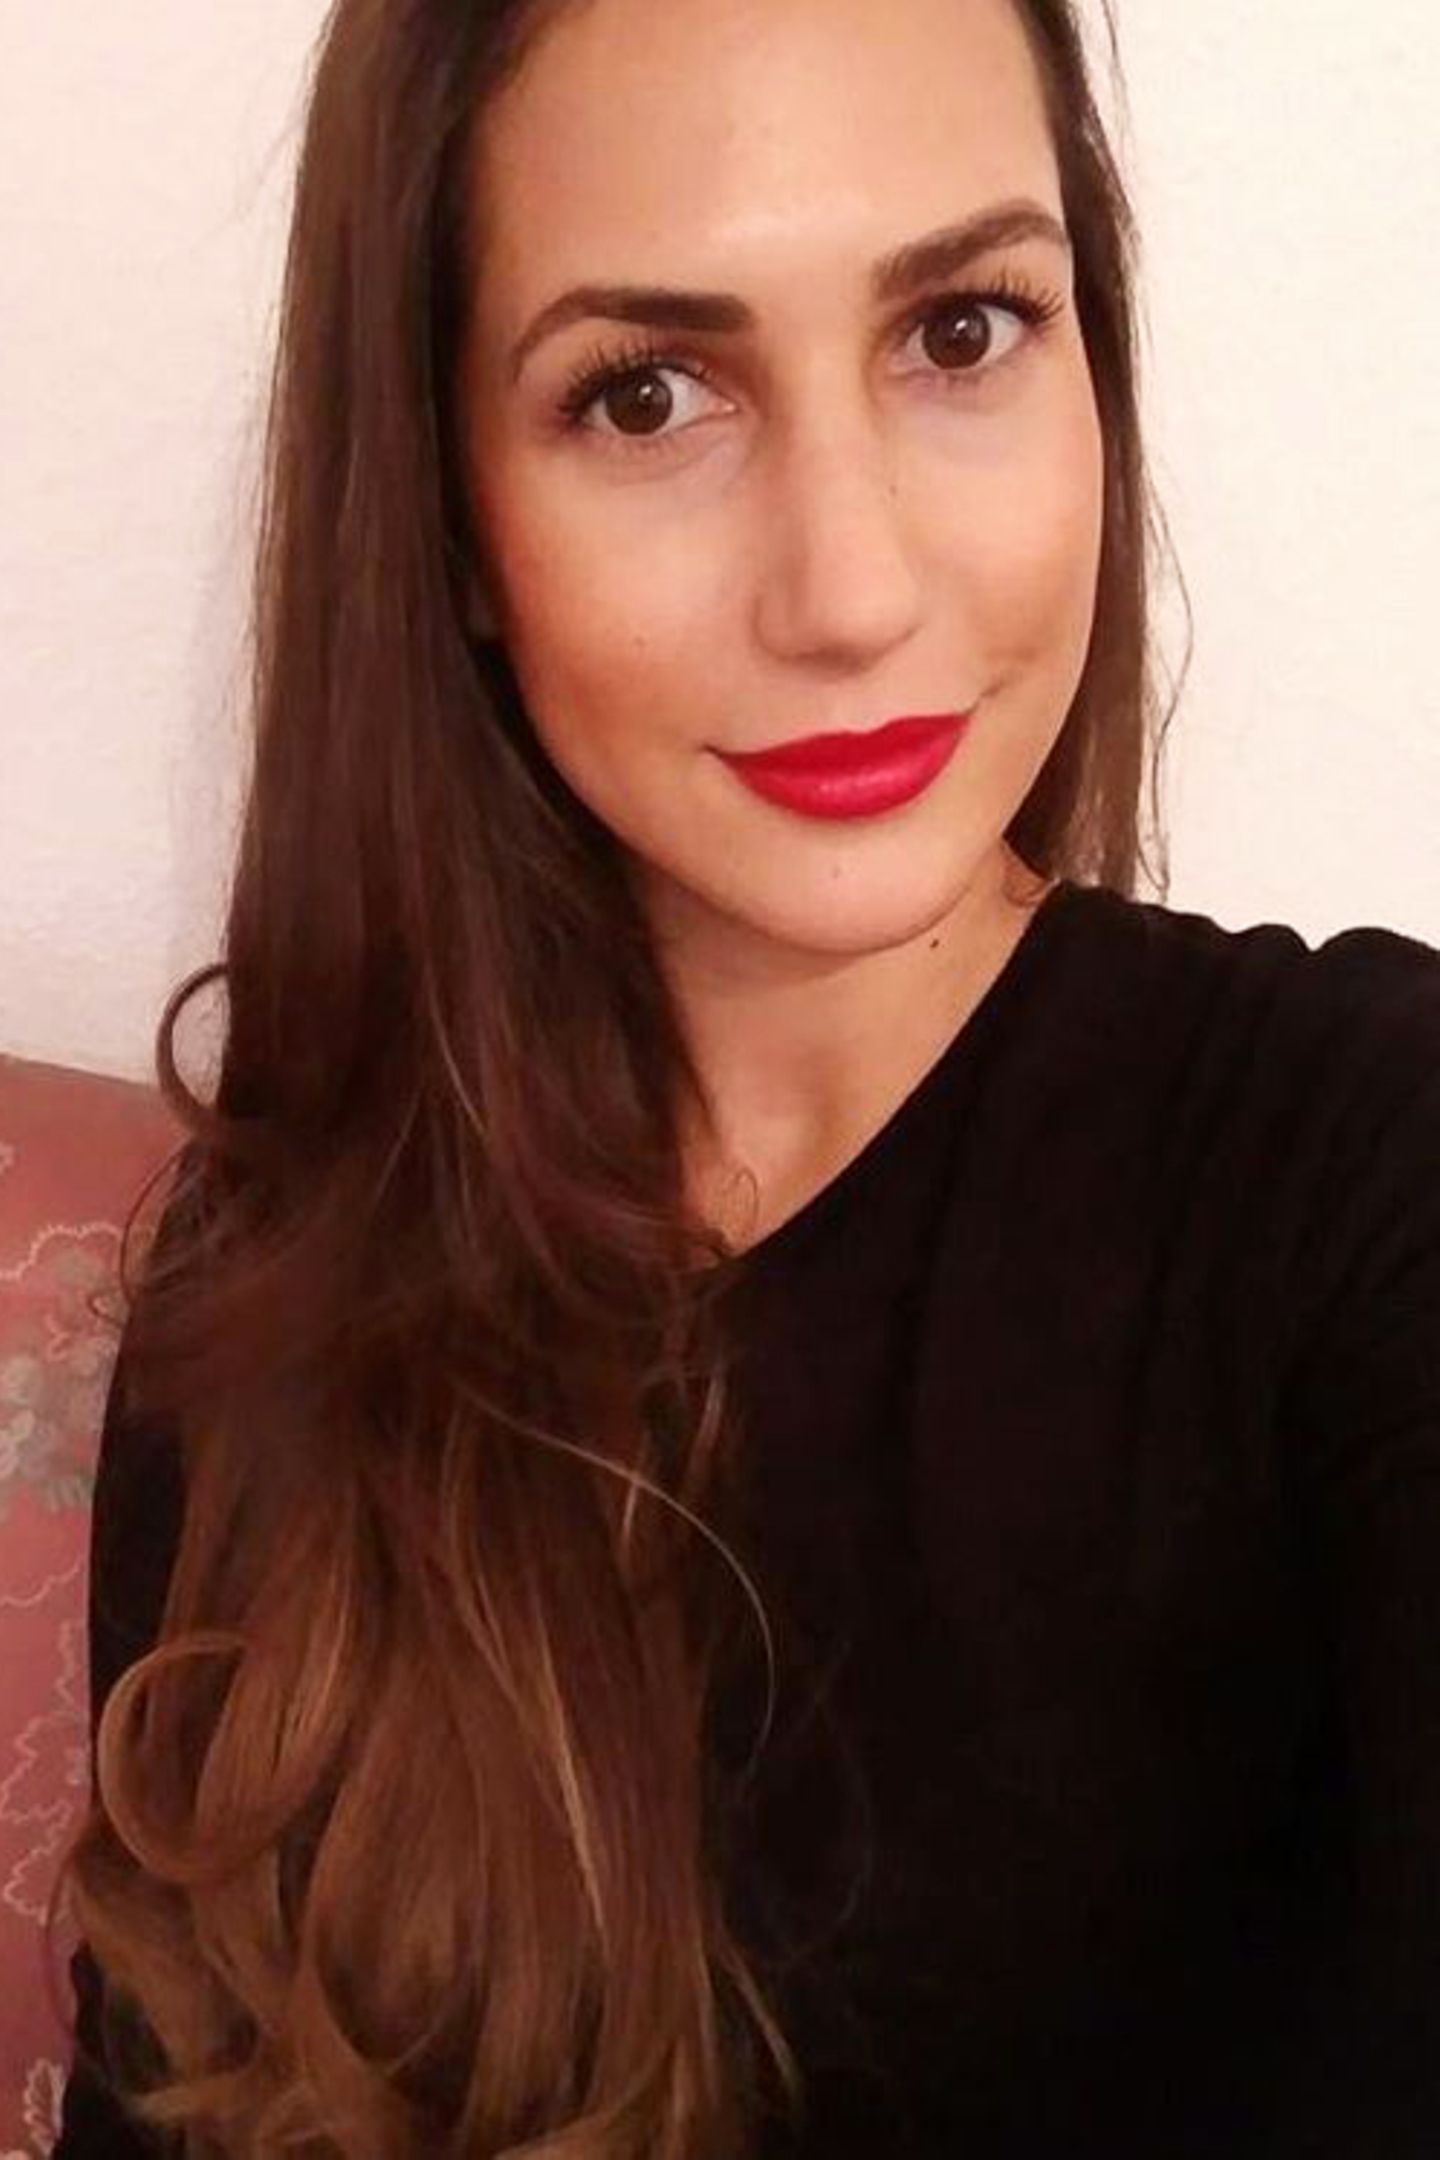 Finalistin Clea-Lacy liebt es ihre Weiblichkeit zu betonen und setzt beim Make-Up gerne auf rote Lippen und betonte Augen.